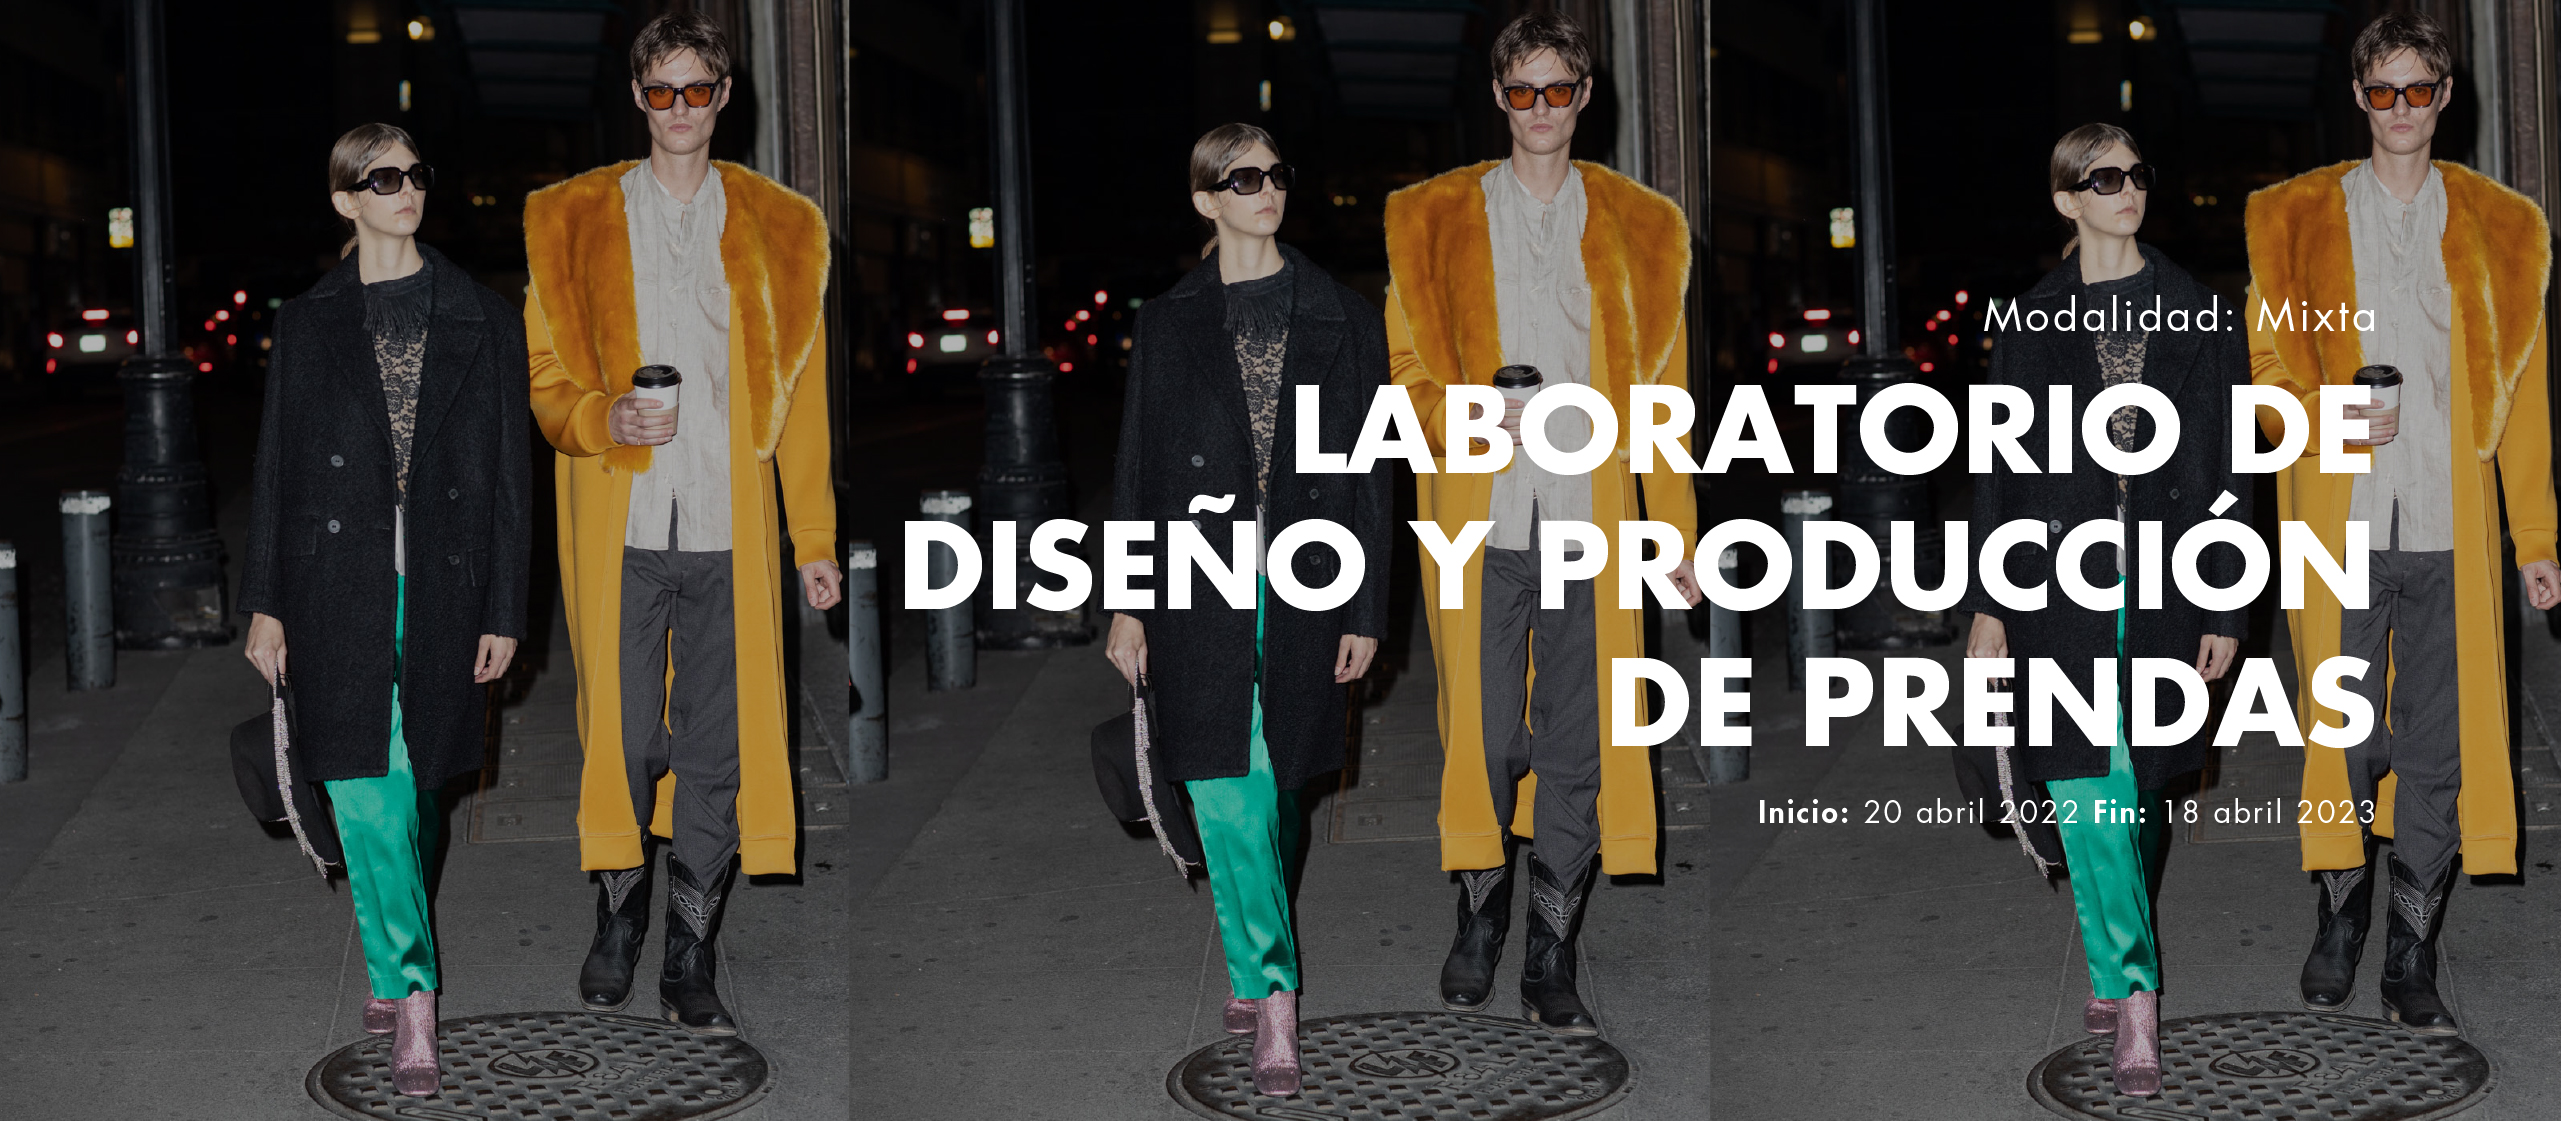 Inicio Creative Lab Mixto: Laboratorio de diseño y producción de prendas